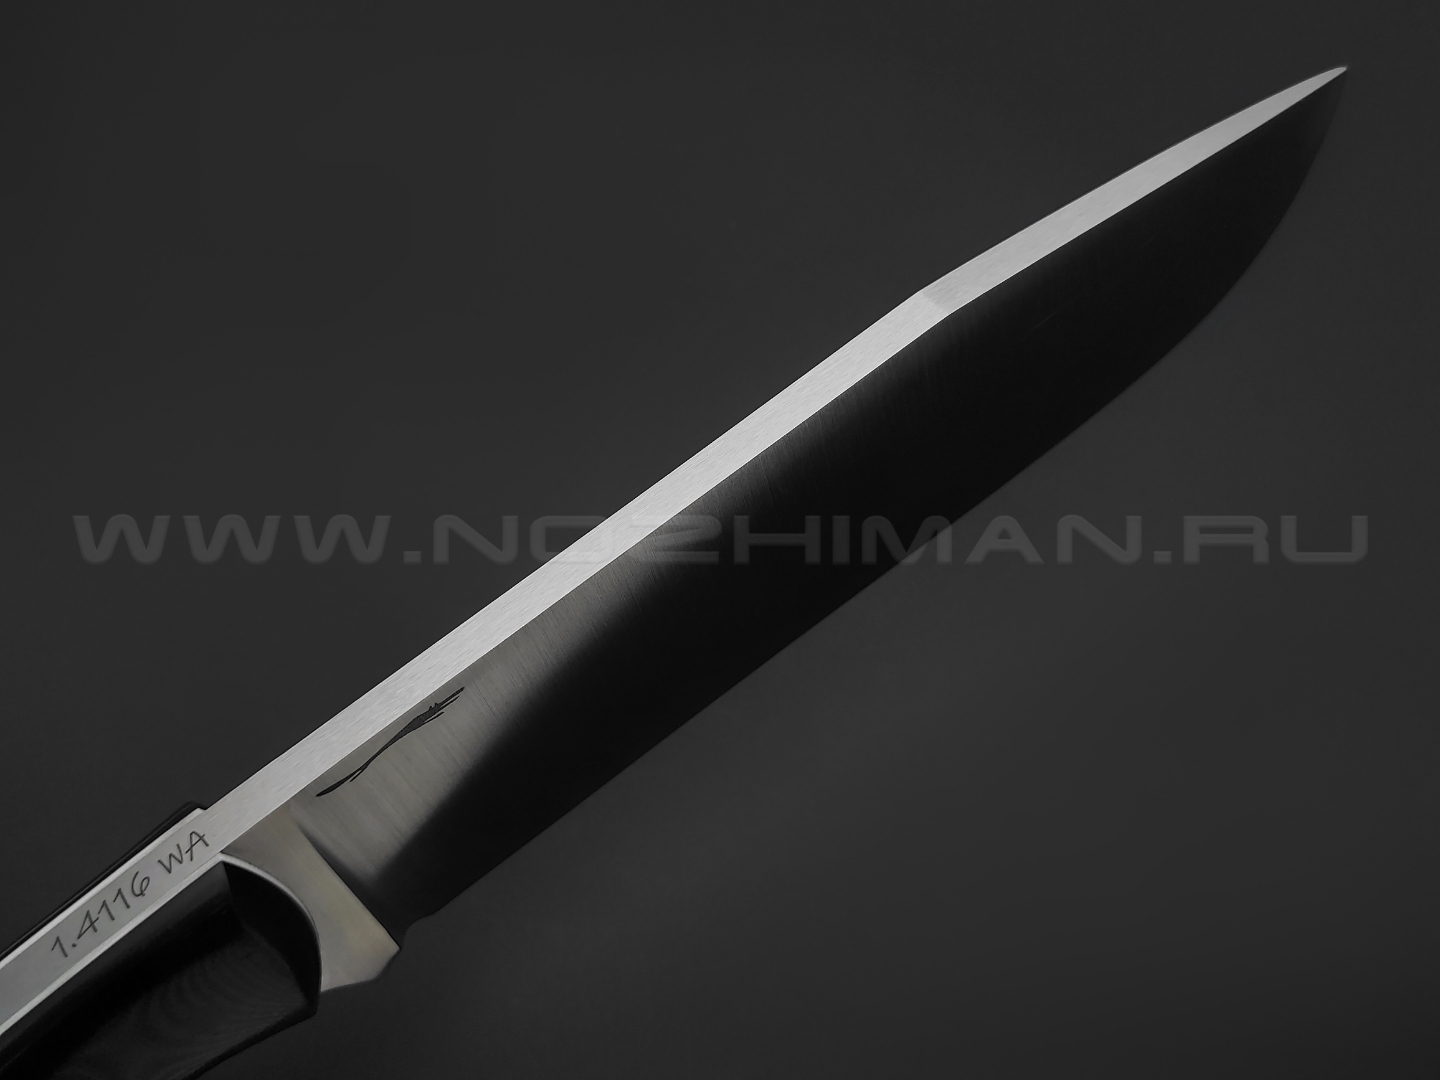 Волчий Век нож Ямской XL сталь 1.4116 Krupp WA satin, рукоять G10 black